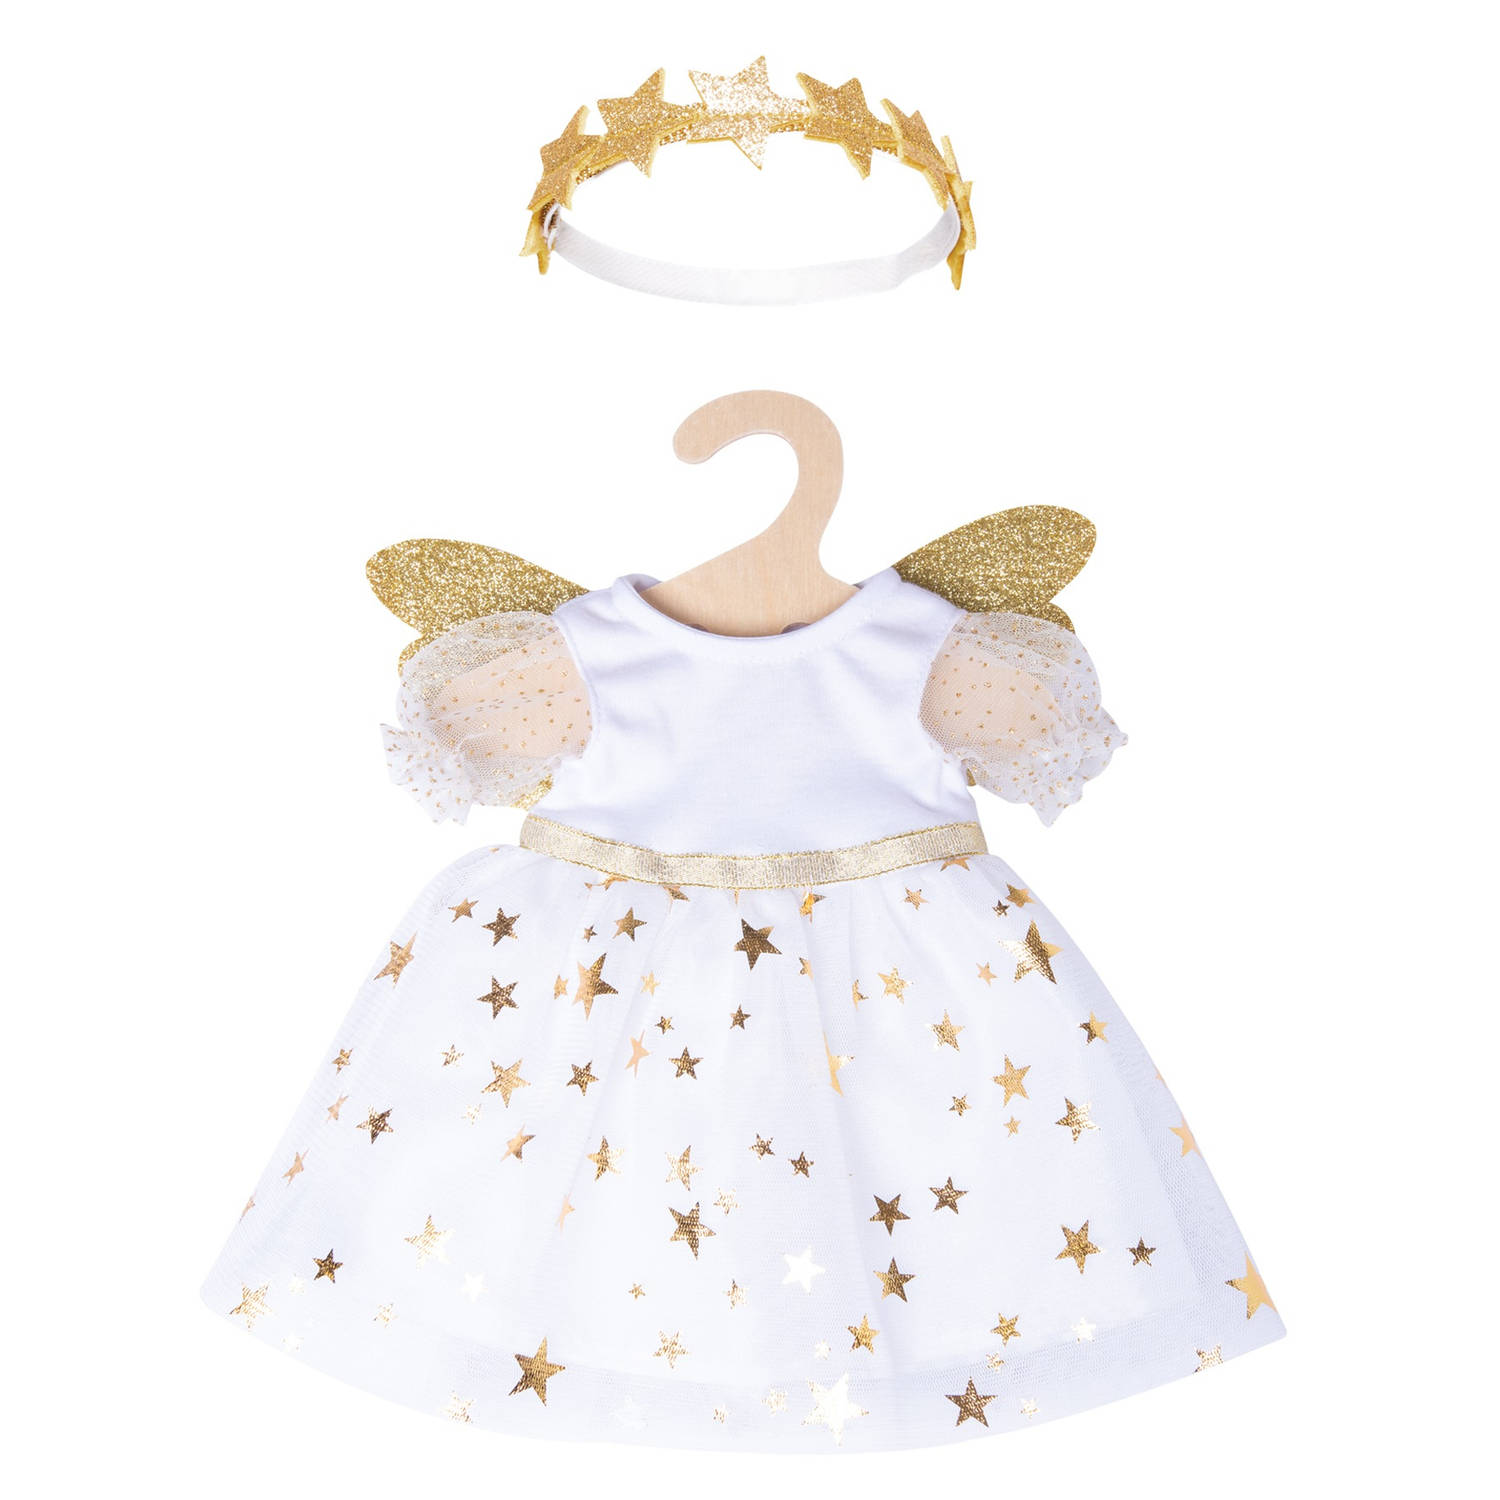 Heless babypoppenkleding engelenjurk 28-35 wit/goud 2-delig